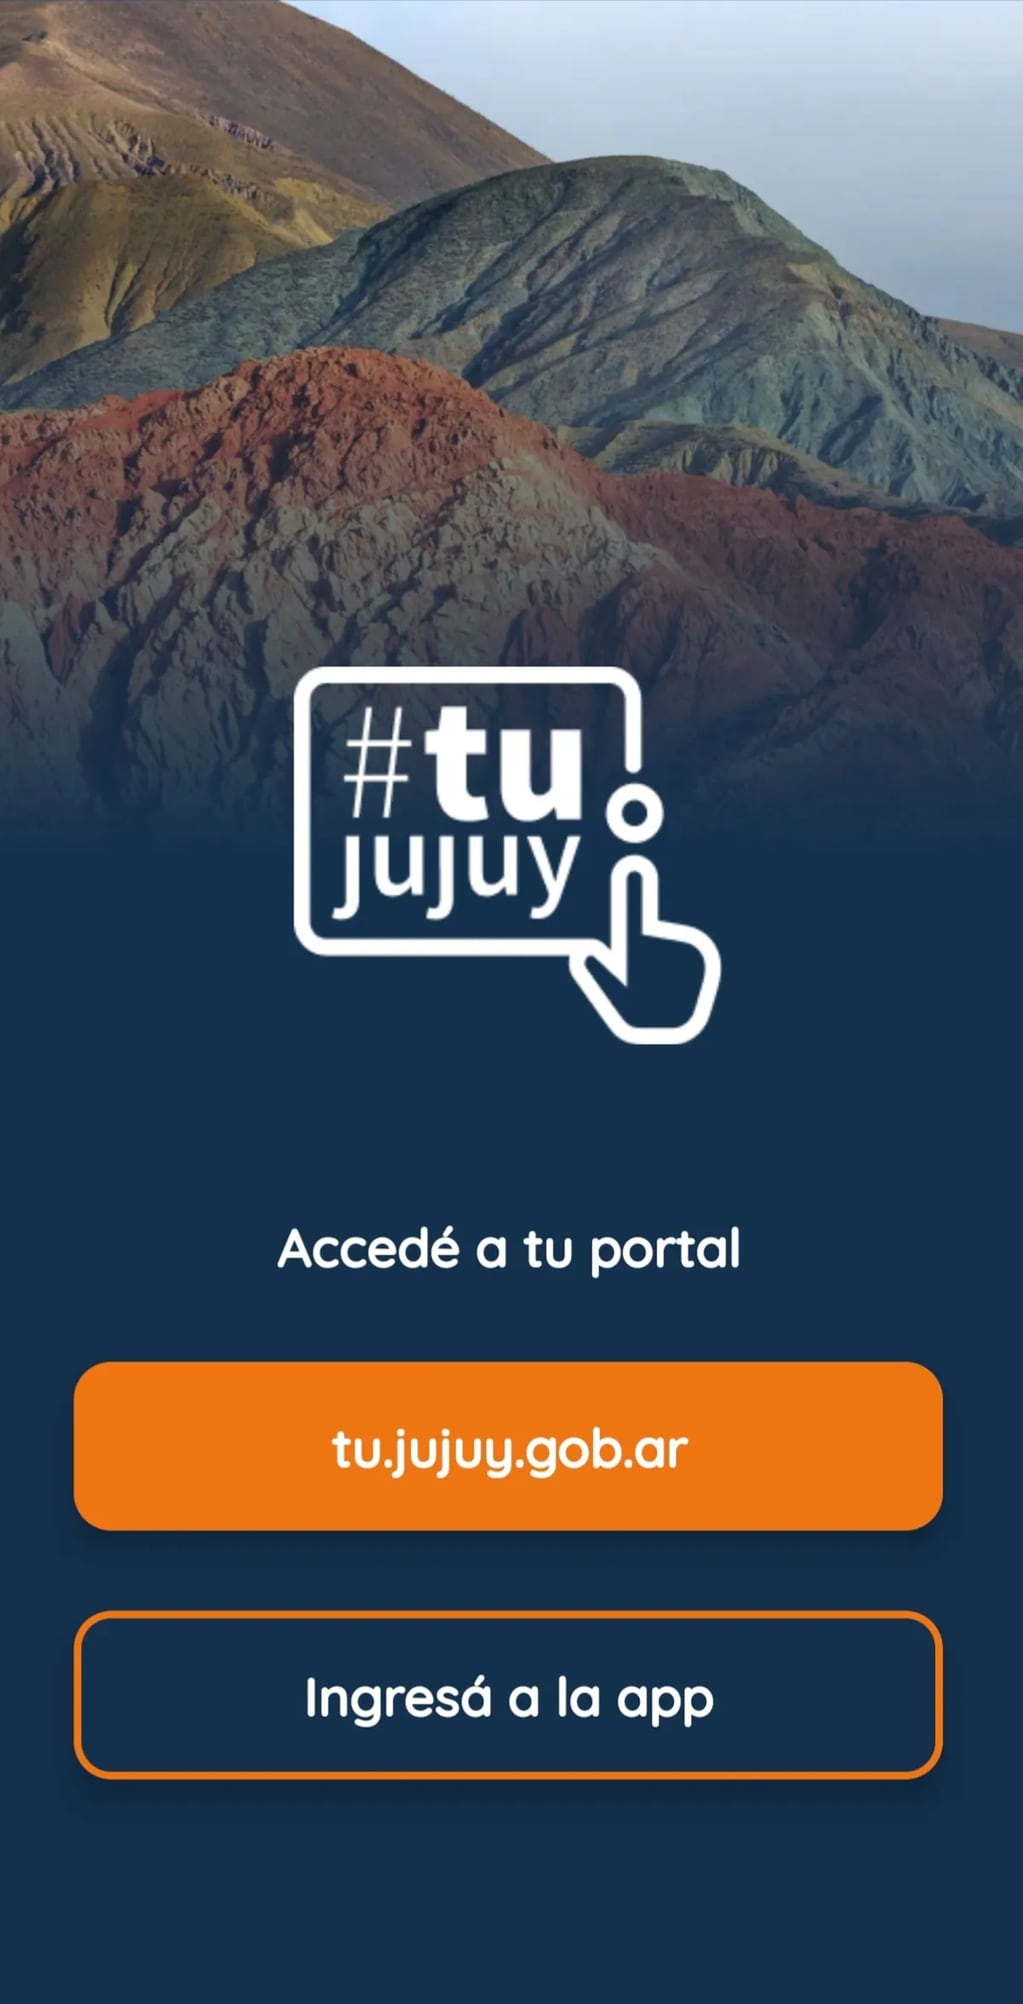 La aplicación tujujuy permite realizar trámites y consultas de distinta índole en organismos del Estado provincial.